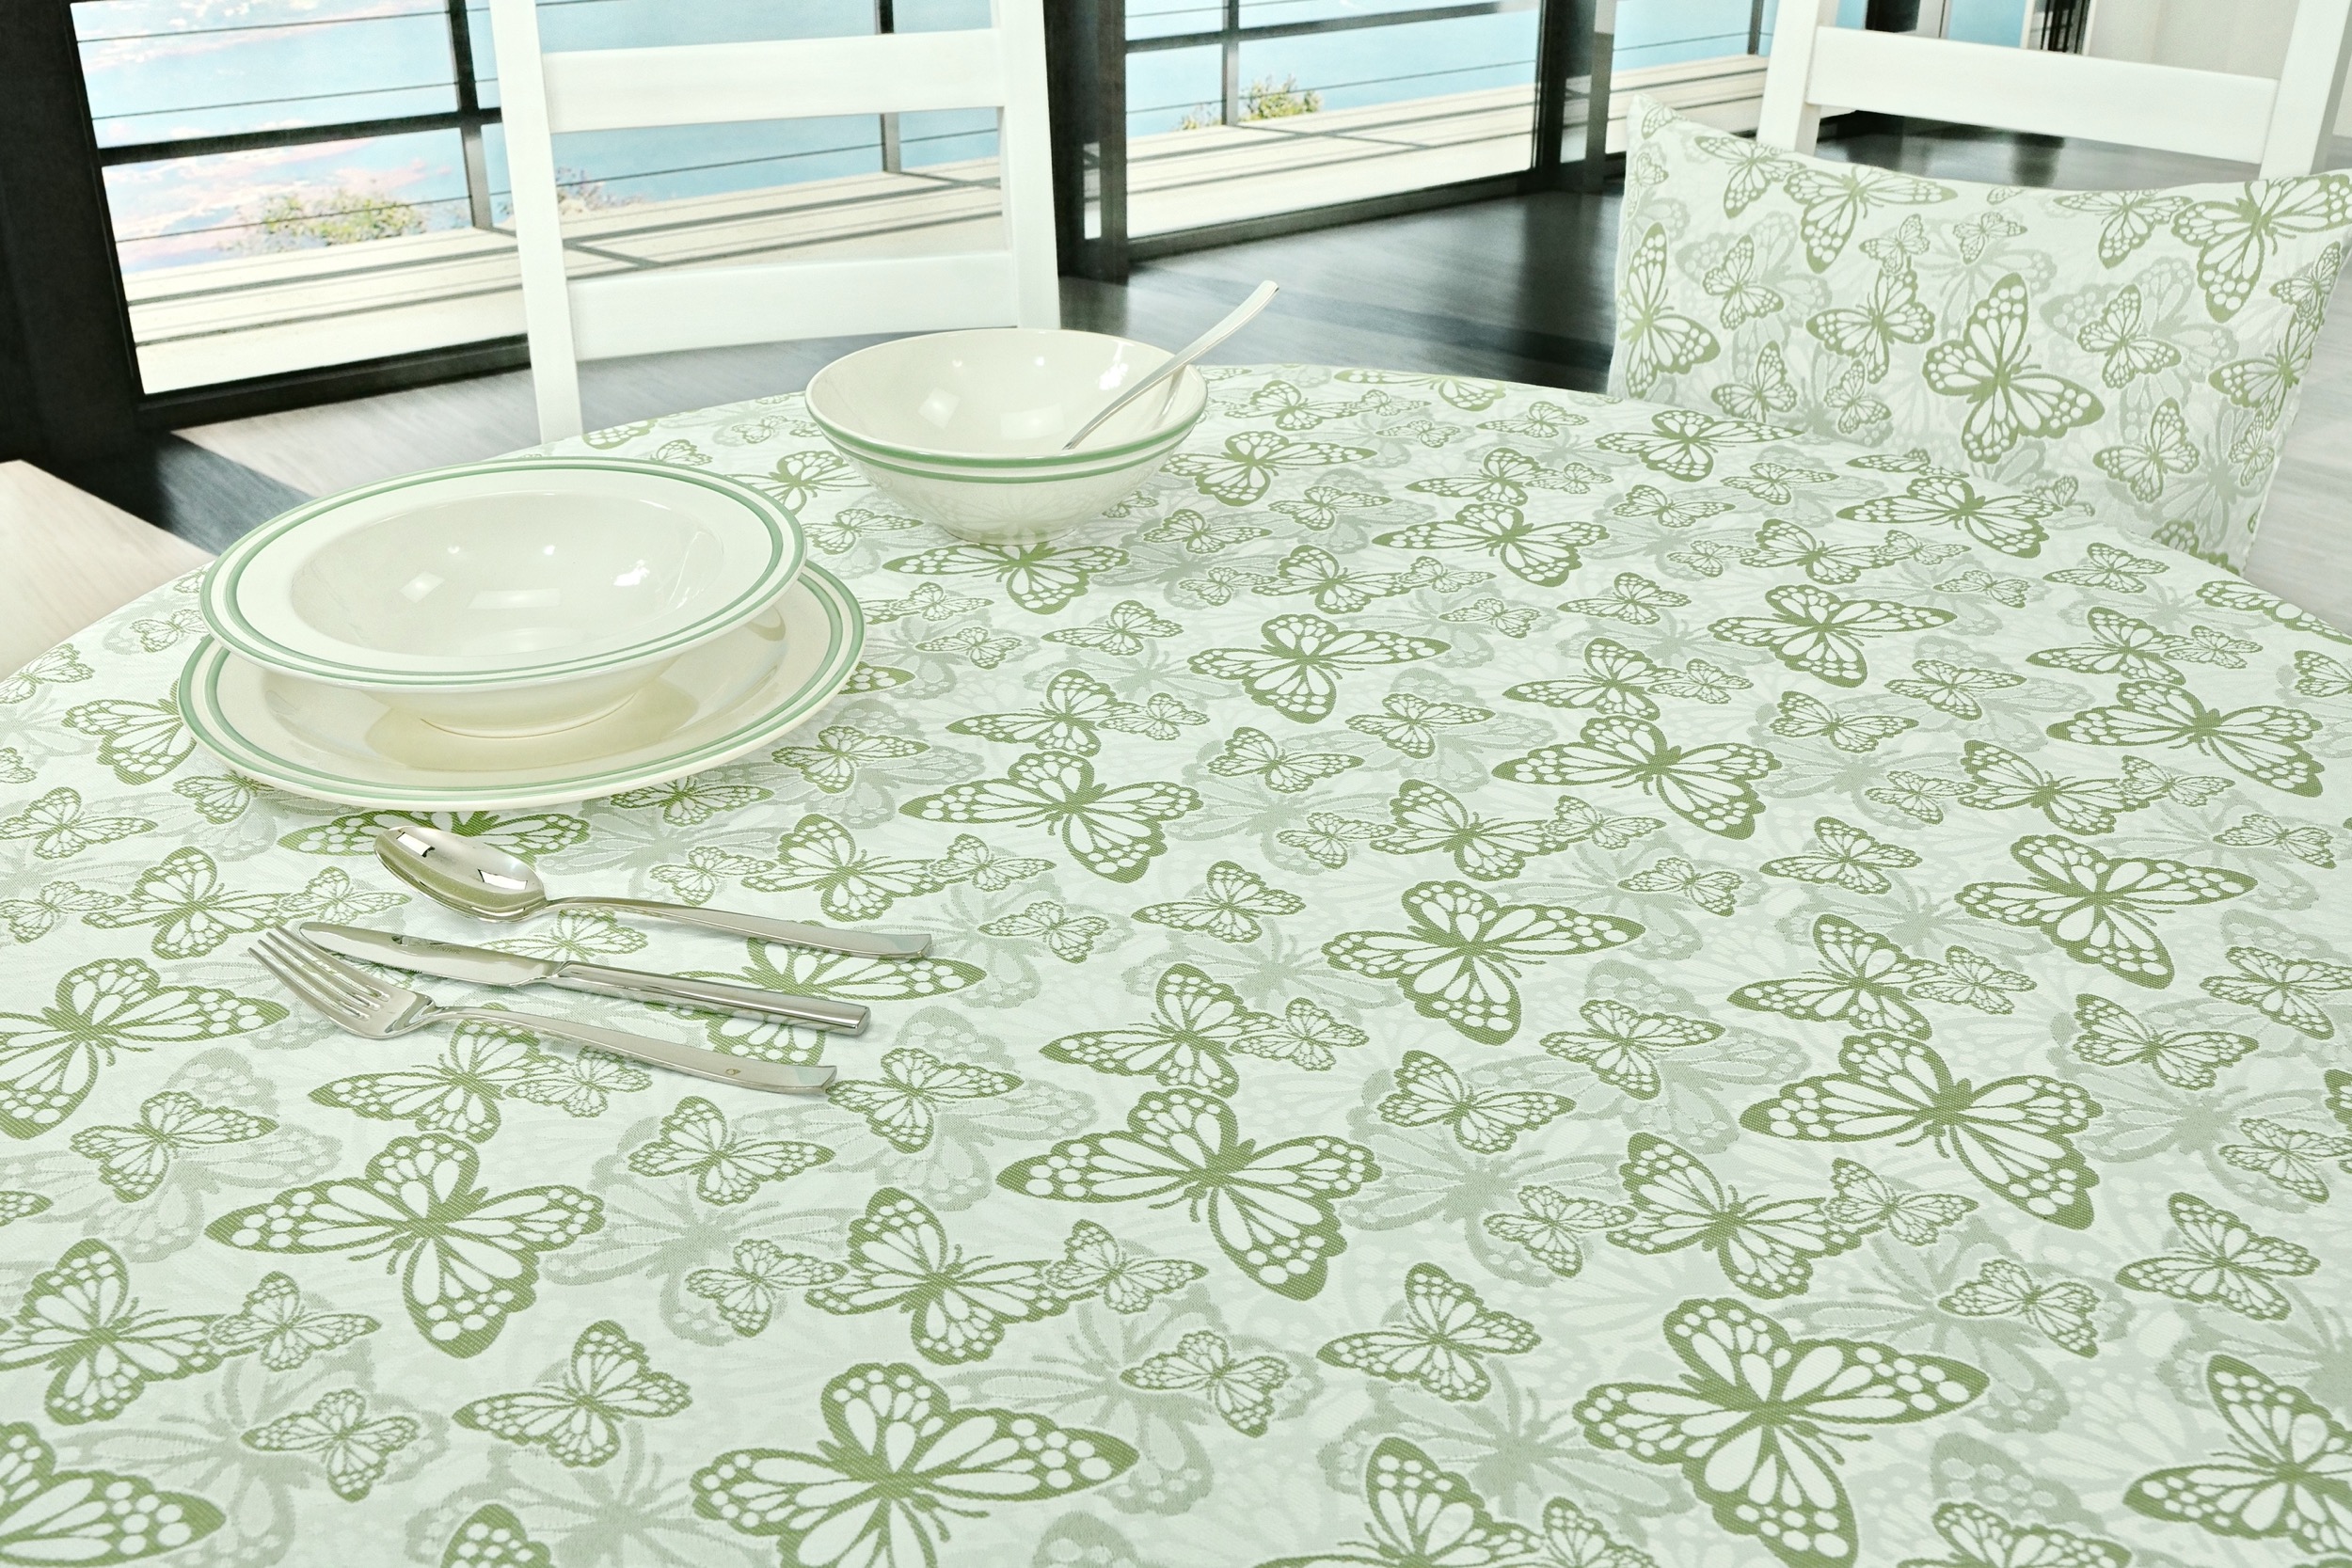 Fleckgeschützte Tischdecke Weiß Grün Muster Springtime Breite 140 cm OVAL